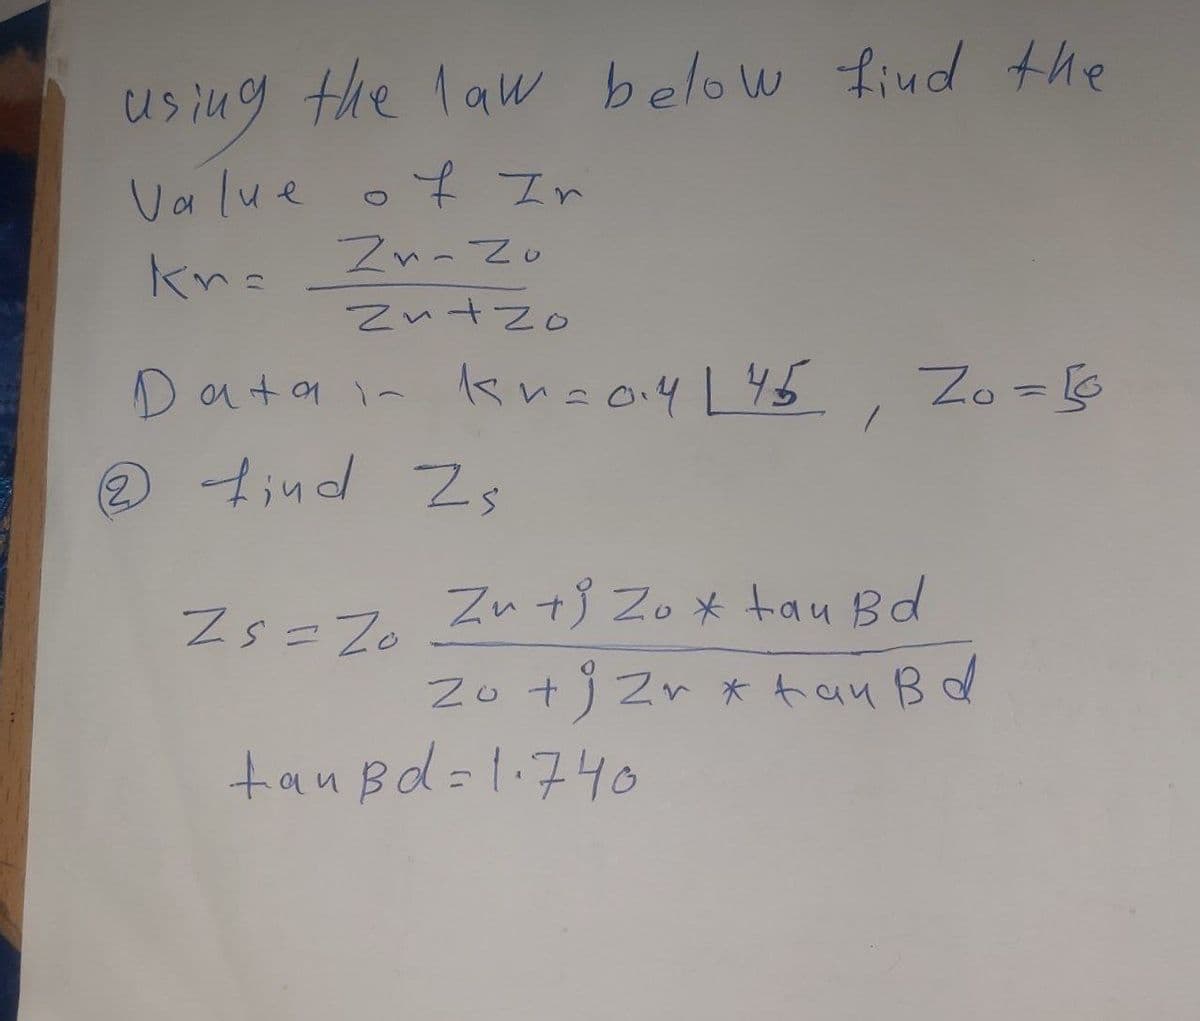 using the law below find the
Value
kn=
of Ir
Zn-Zo
Zn+zo
ata in kr=014 L45
2 find Zs
Zs=Z0
1
tanBd=1.740
Zo = 10
Zu tj Zox tau Bd
Zo + j Zr x tau B d